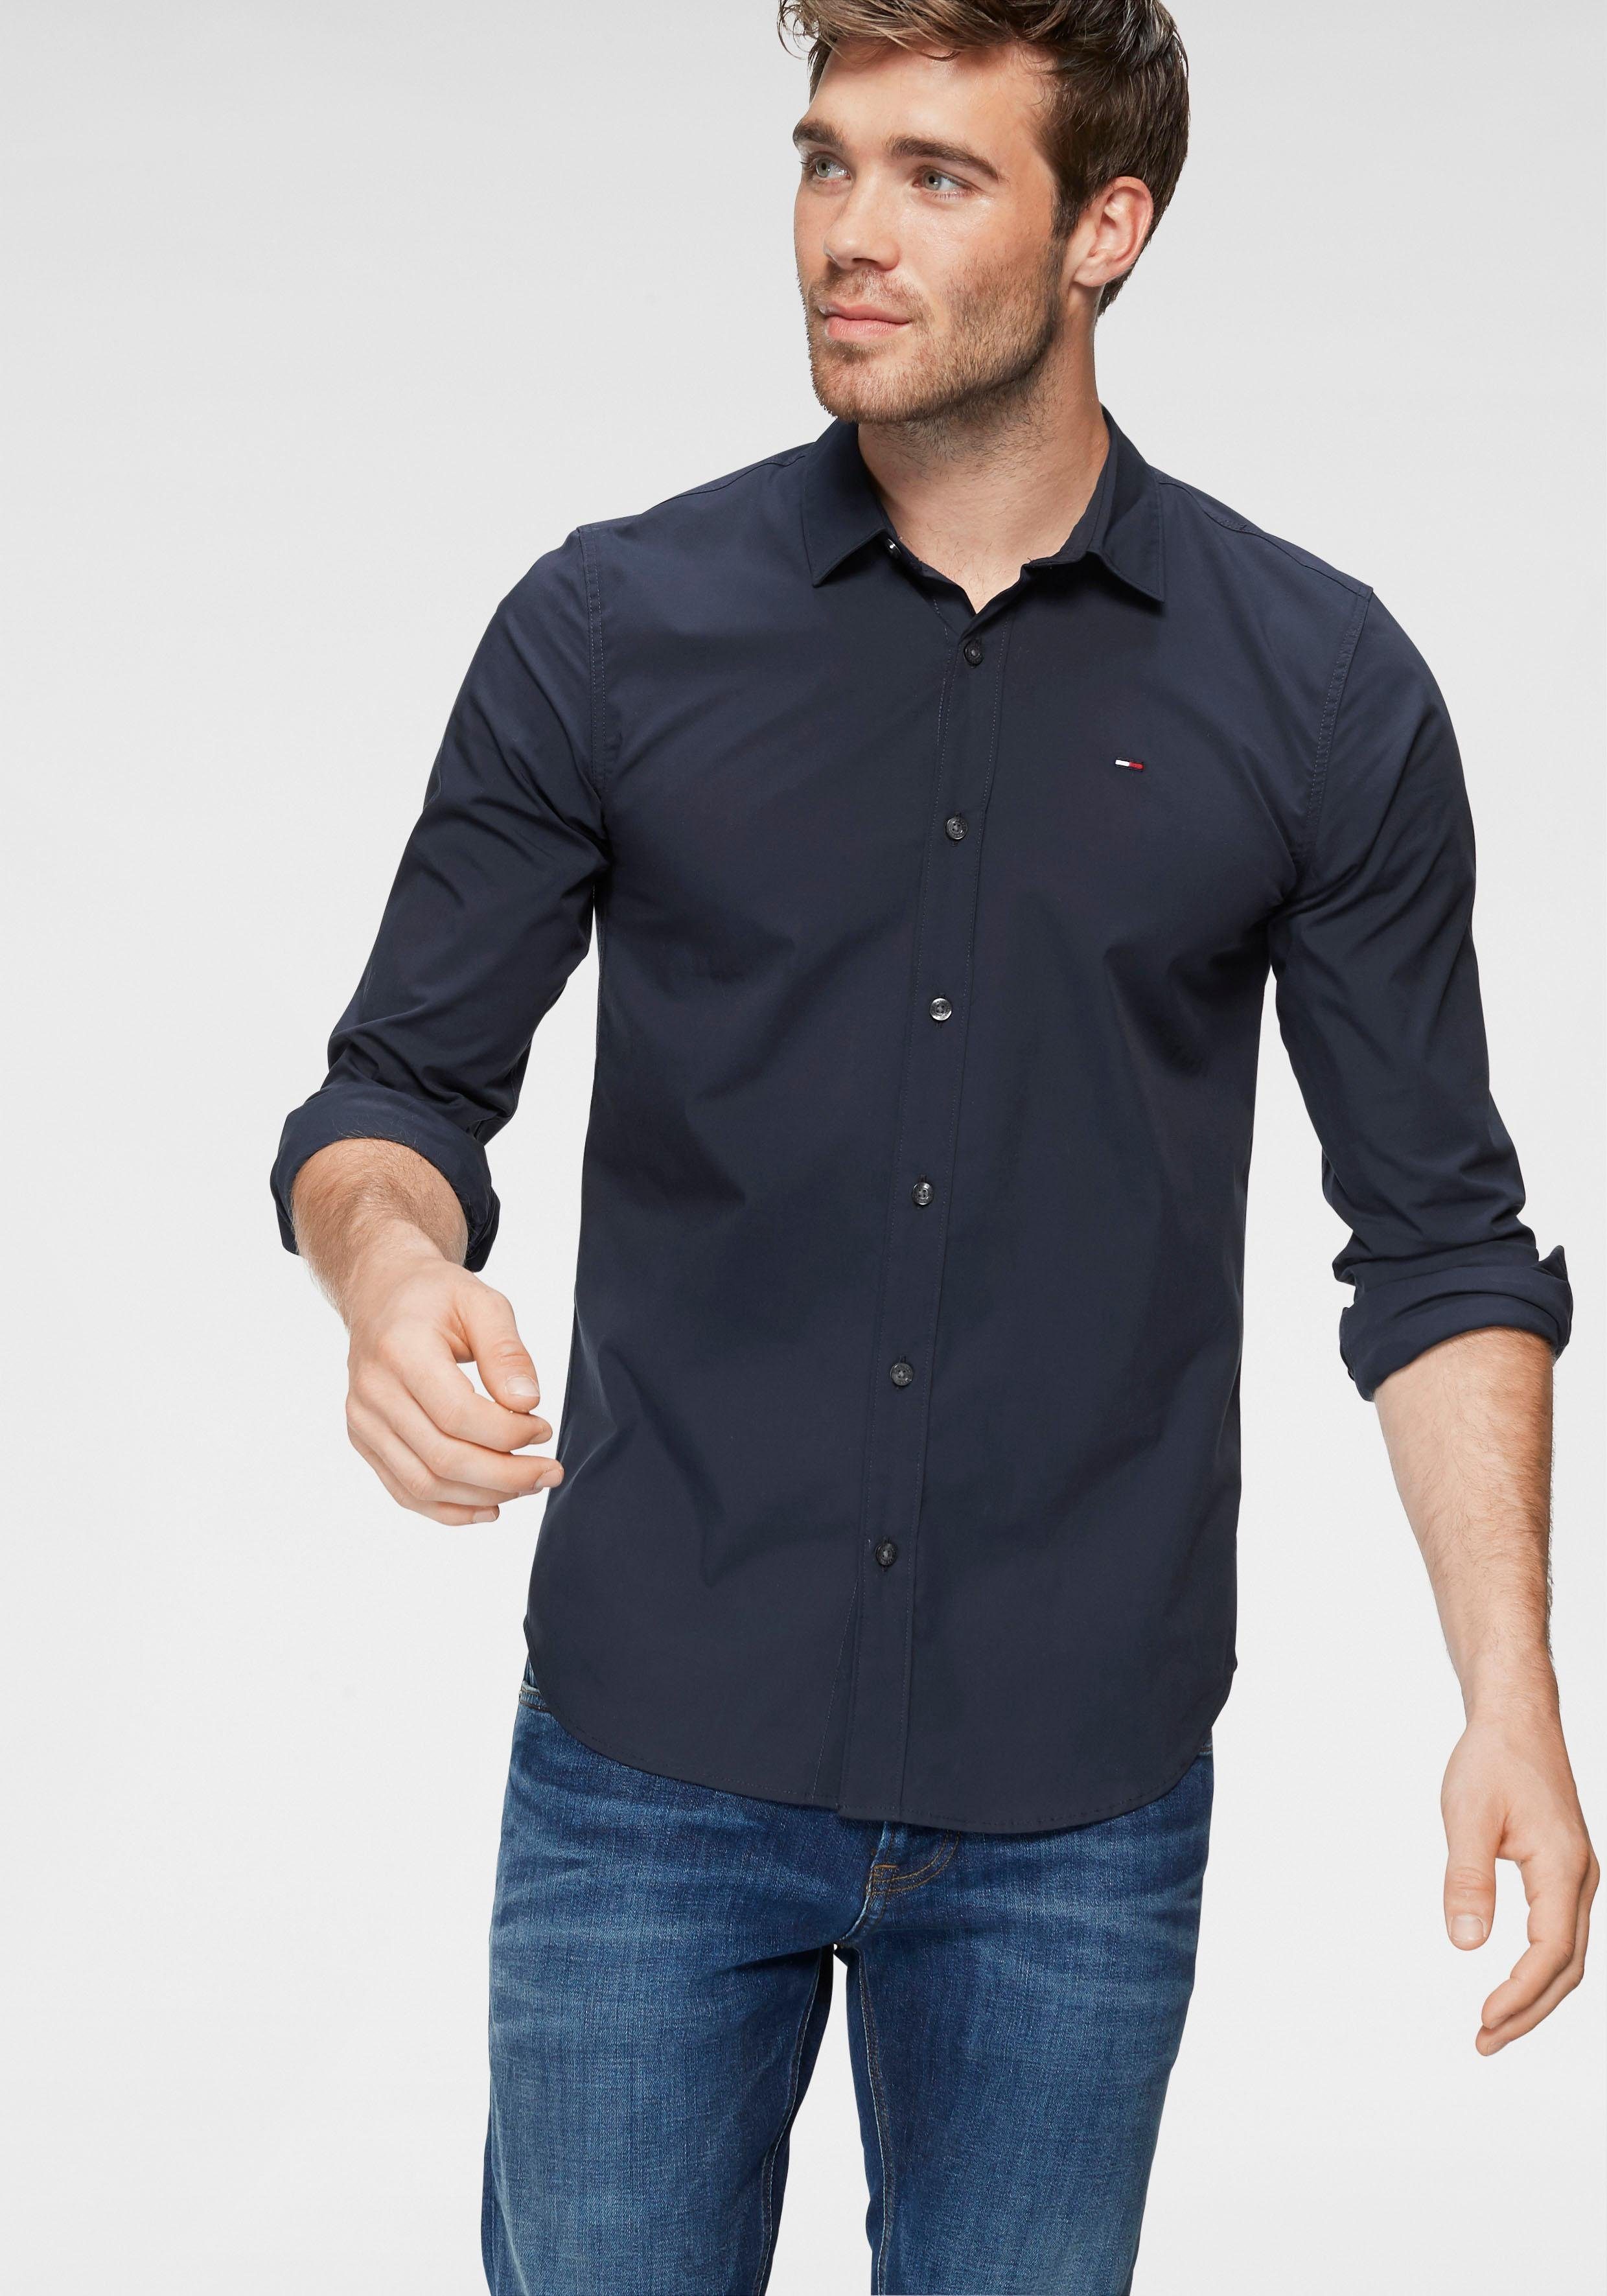 Tommy Hilfiger Hemden online kaufen | OTTO